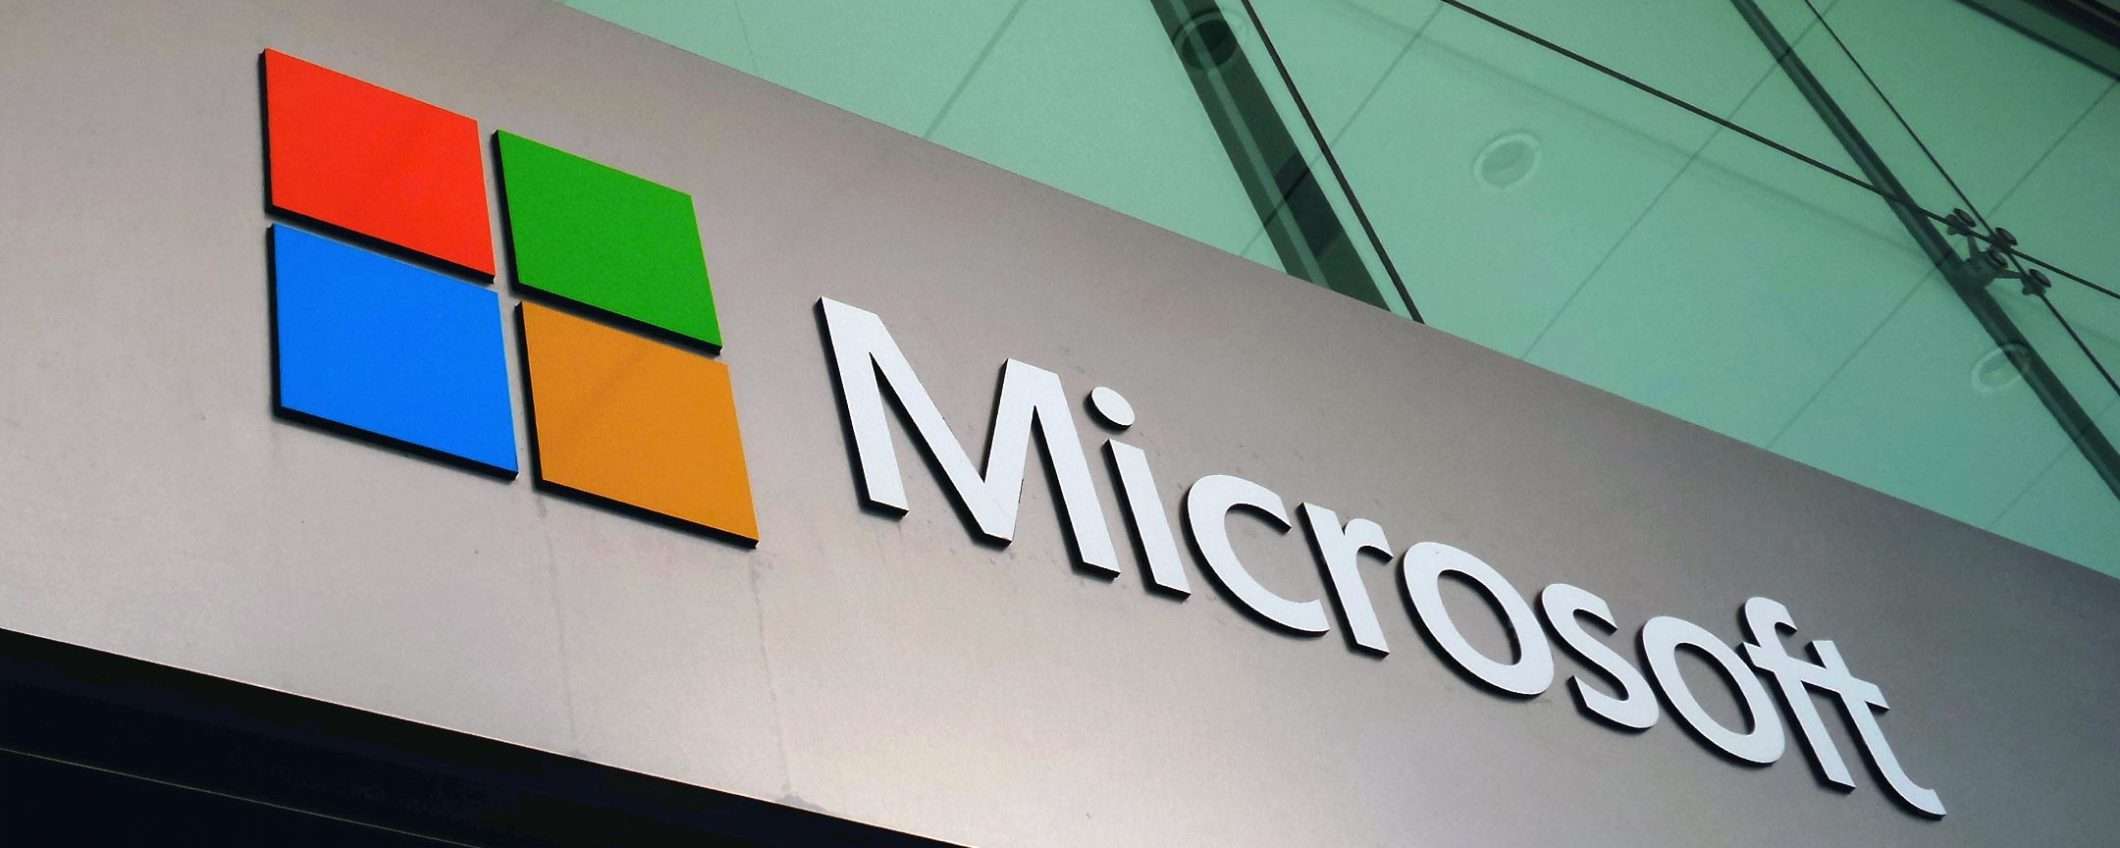 Microsoft, nuova acquisizione monstre per il gaming?